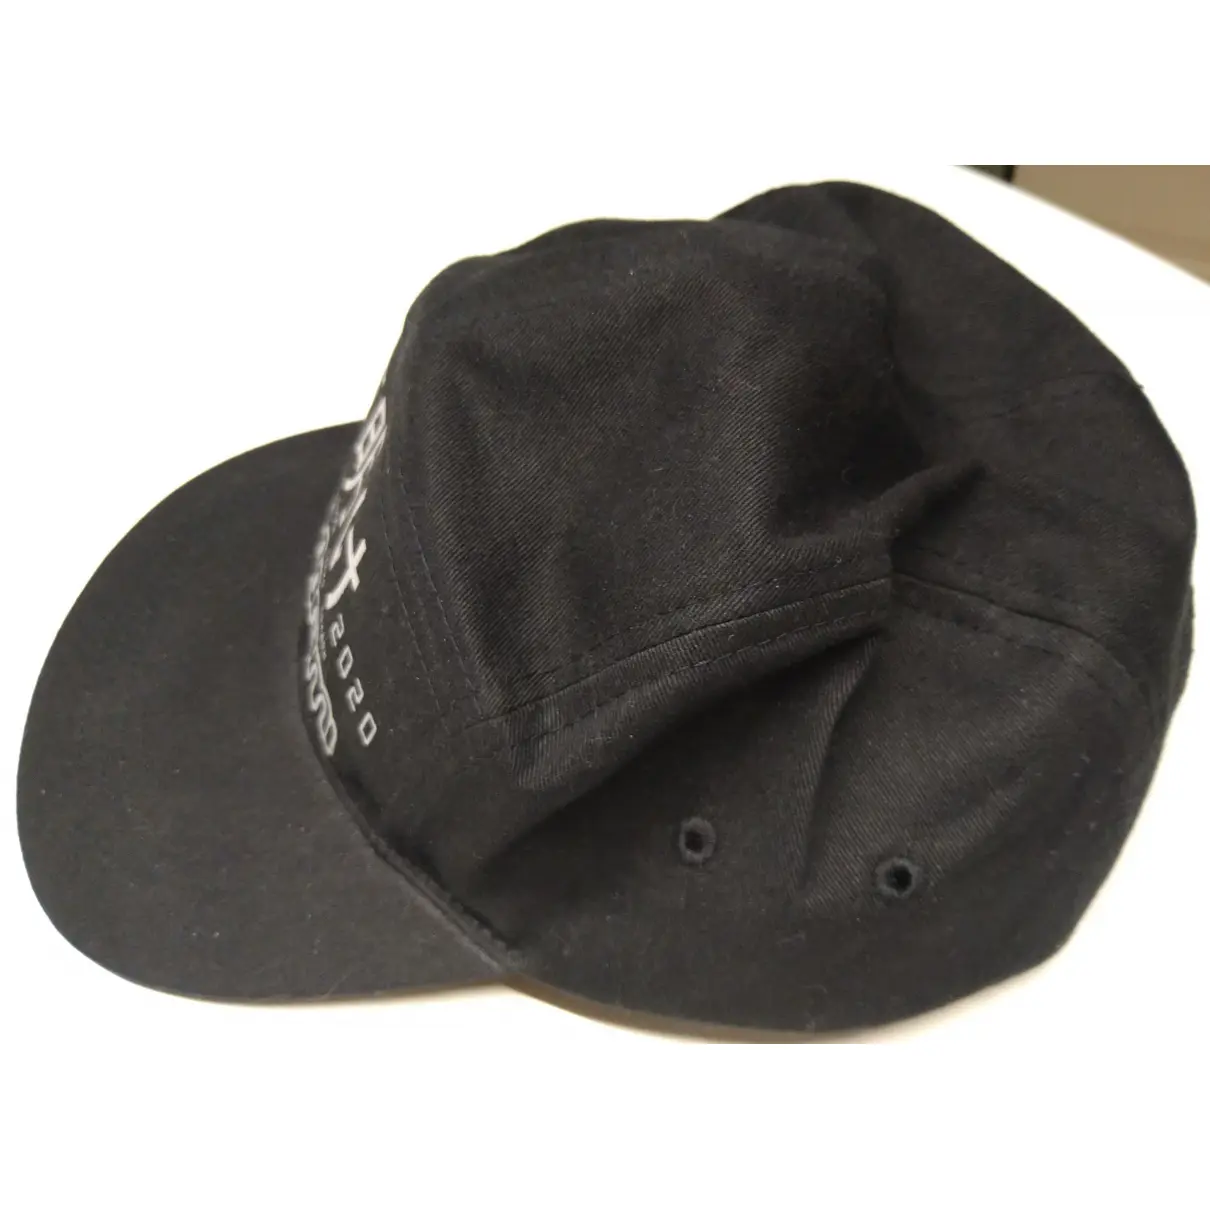 Buy Paccbet Hat online